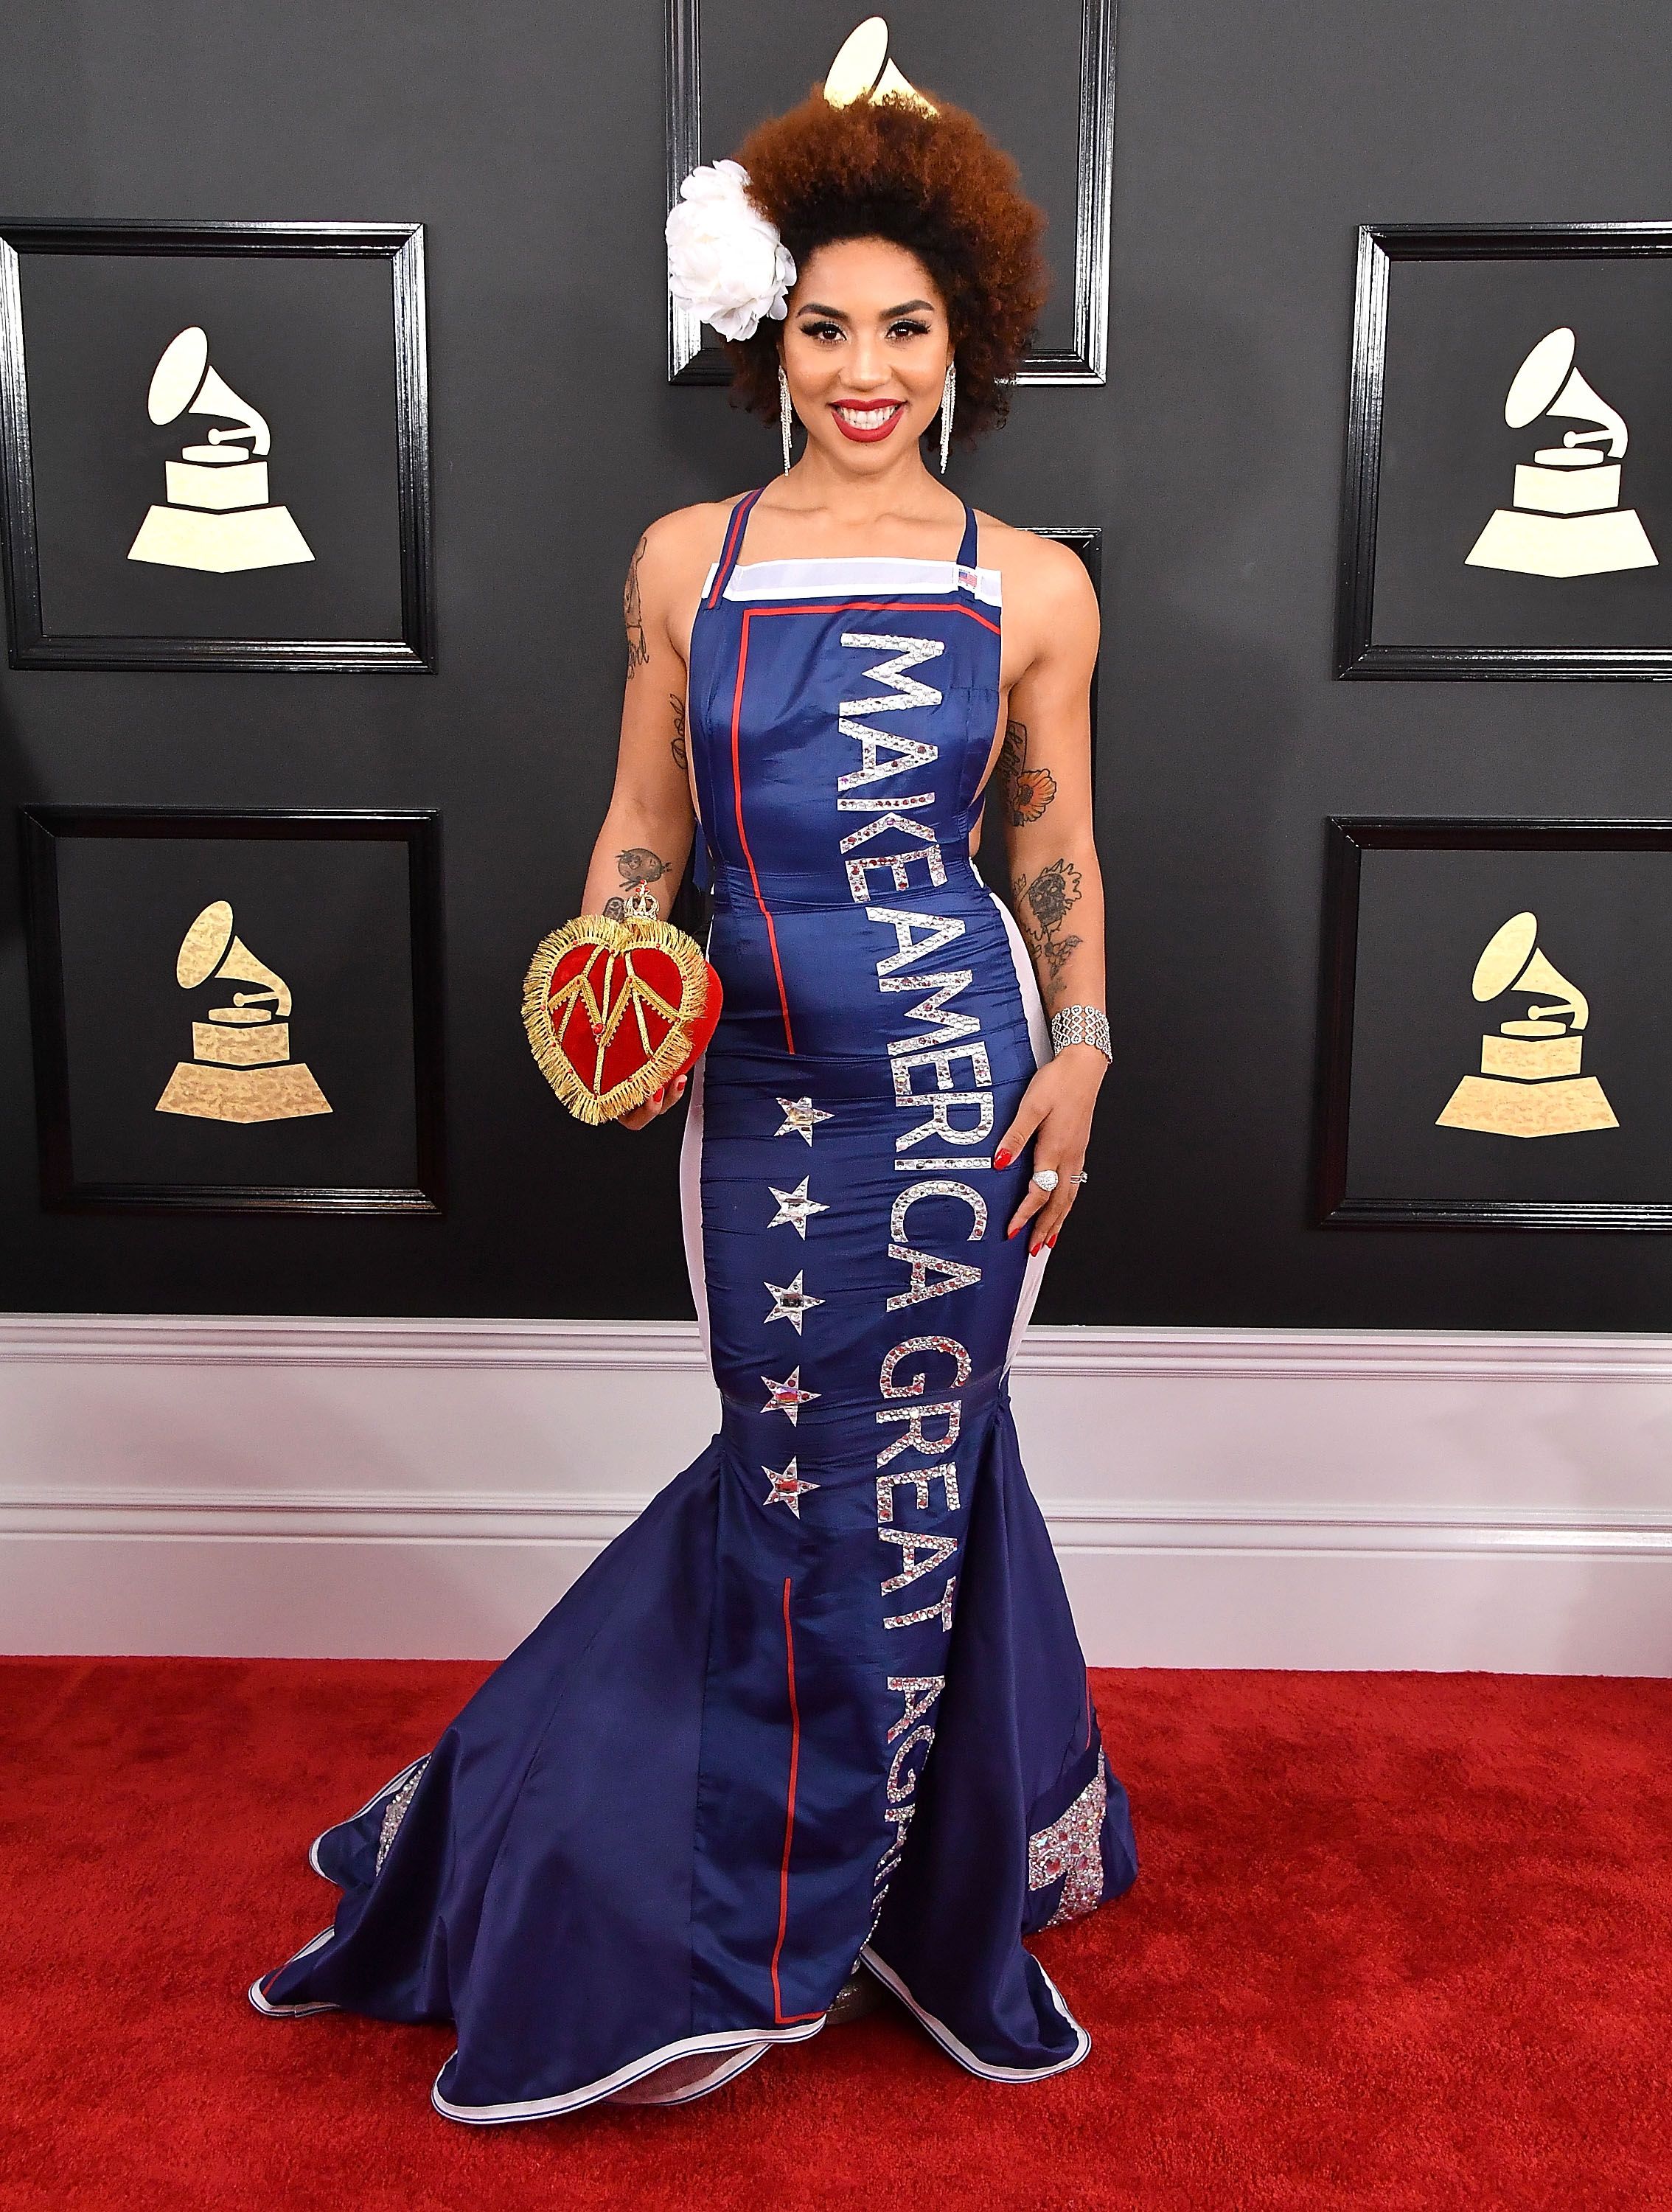 Joy Villas Maga Dress At The Grammys Paid Off